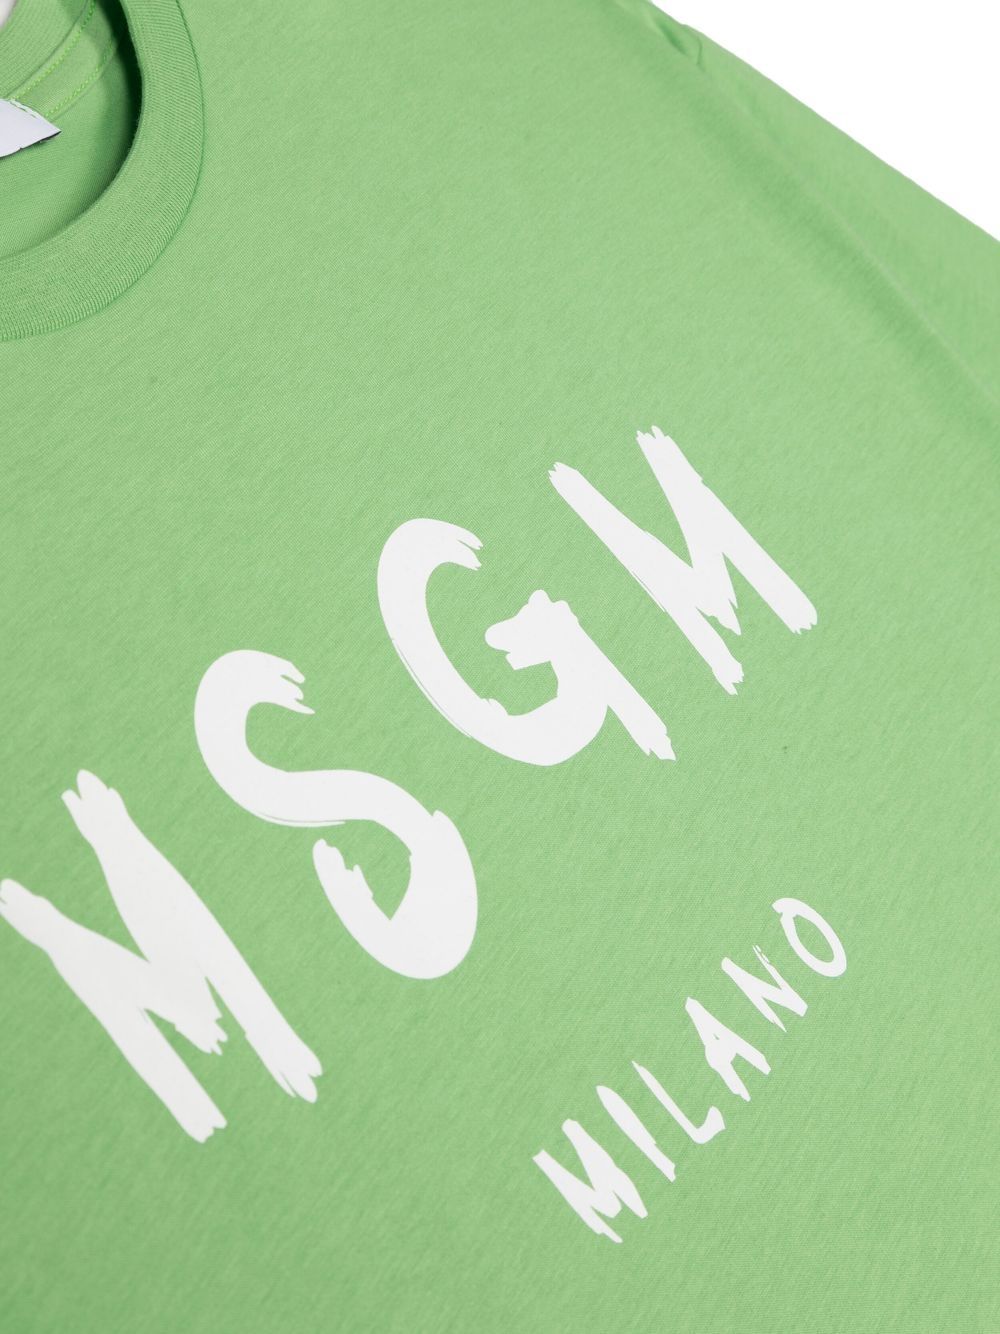 T-shirt verde per bambino con logo